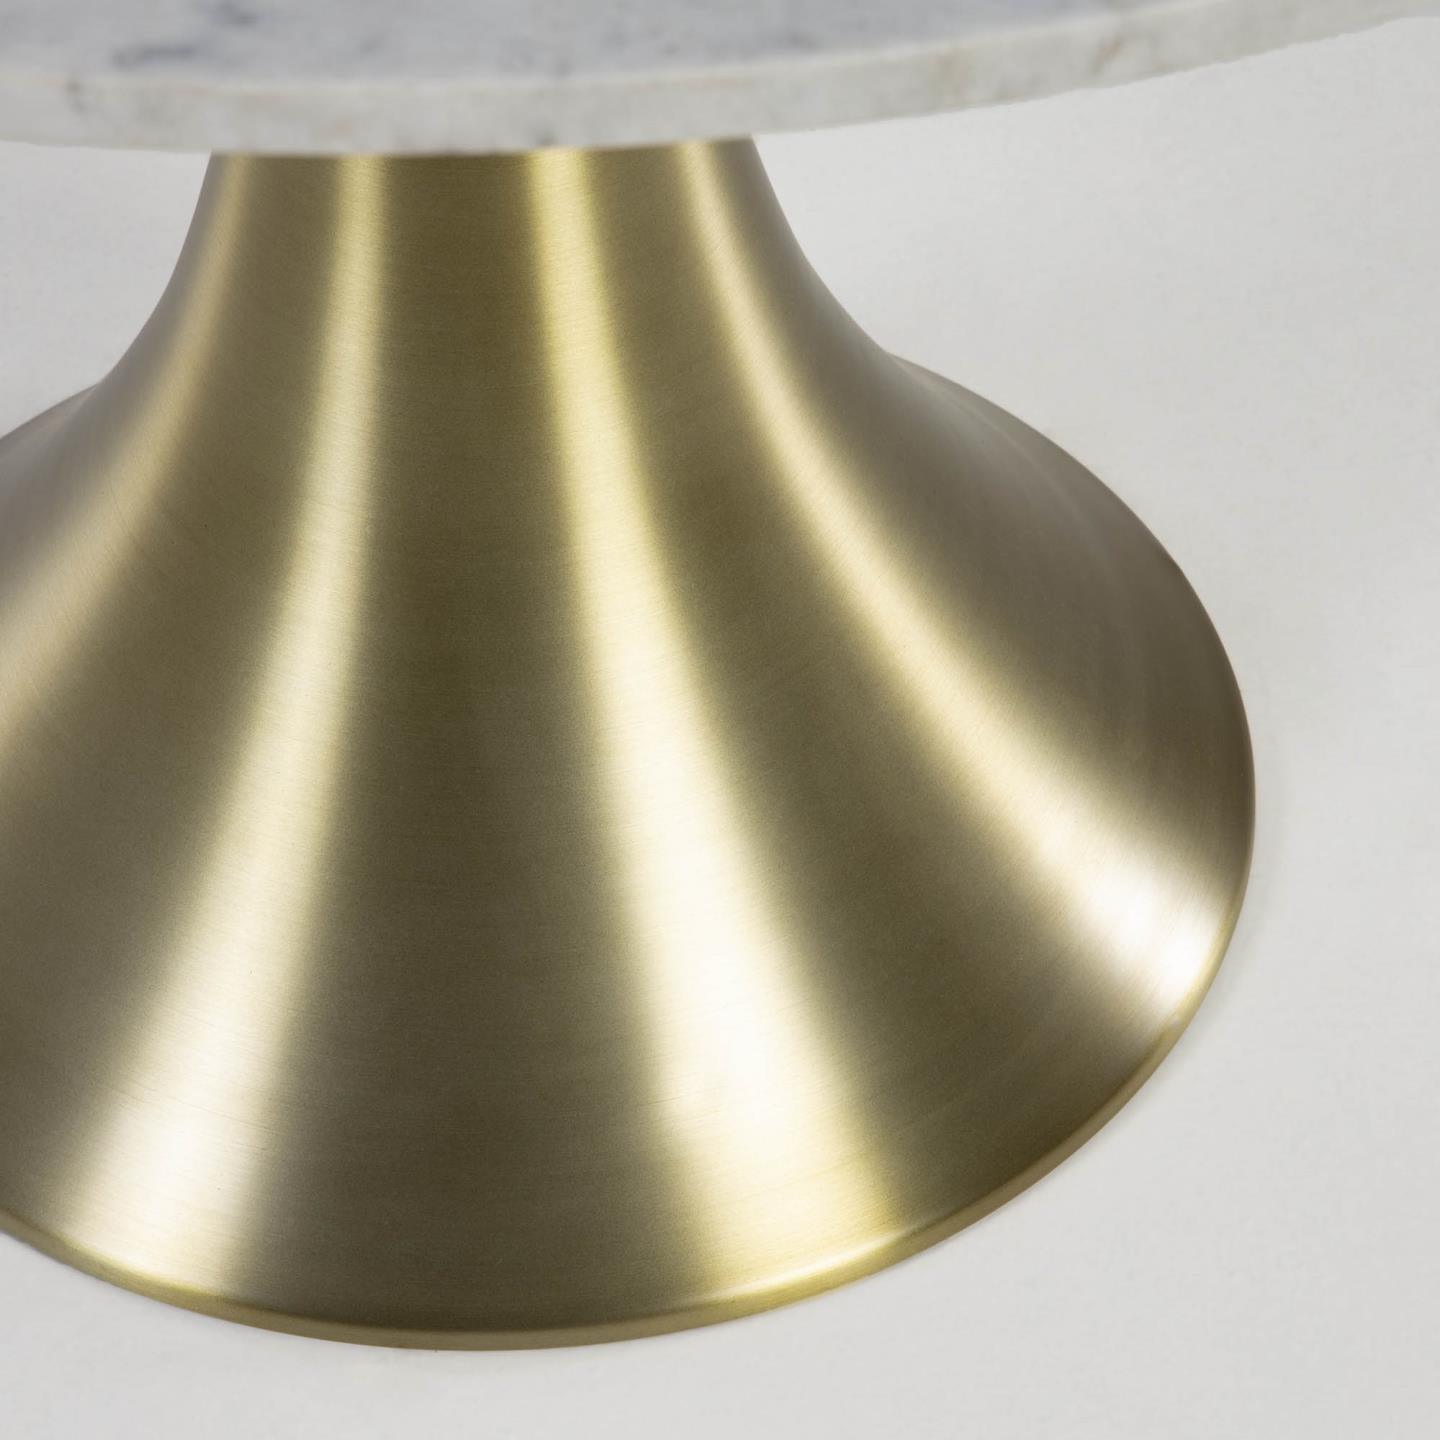 Stół ORIA biały marmur ze złotą podstawą La Forma    Eye on Design